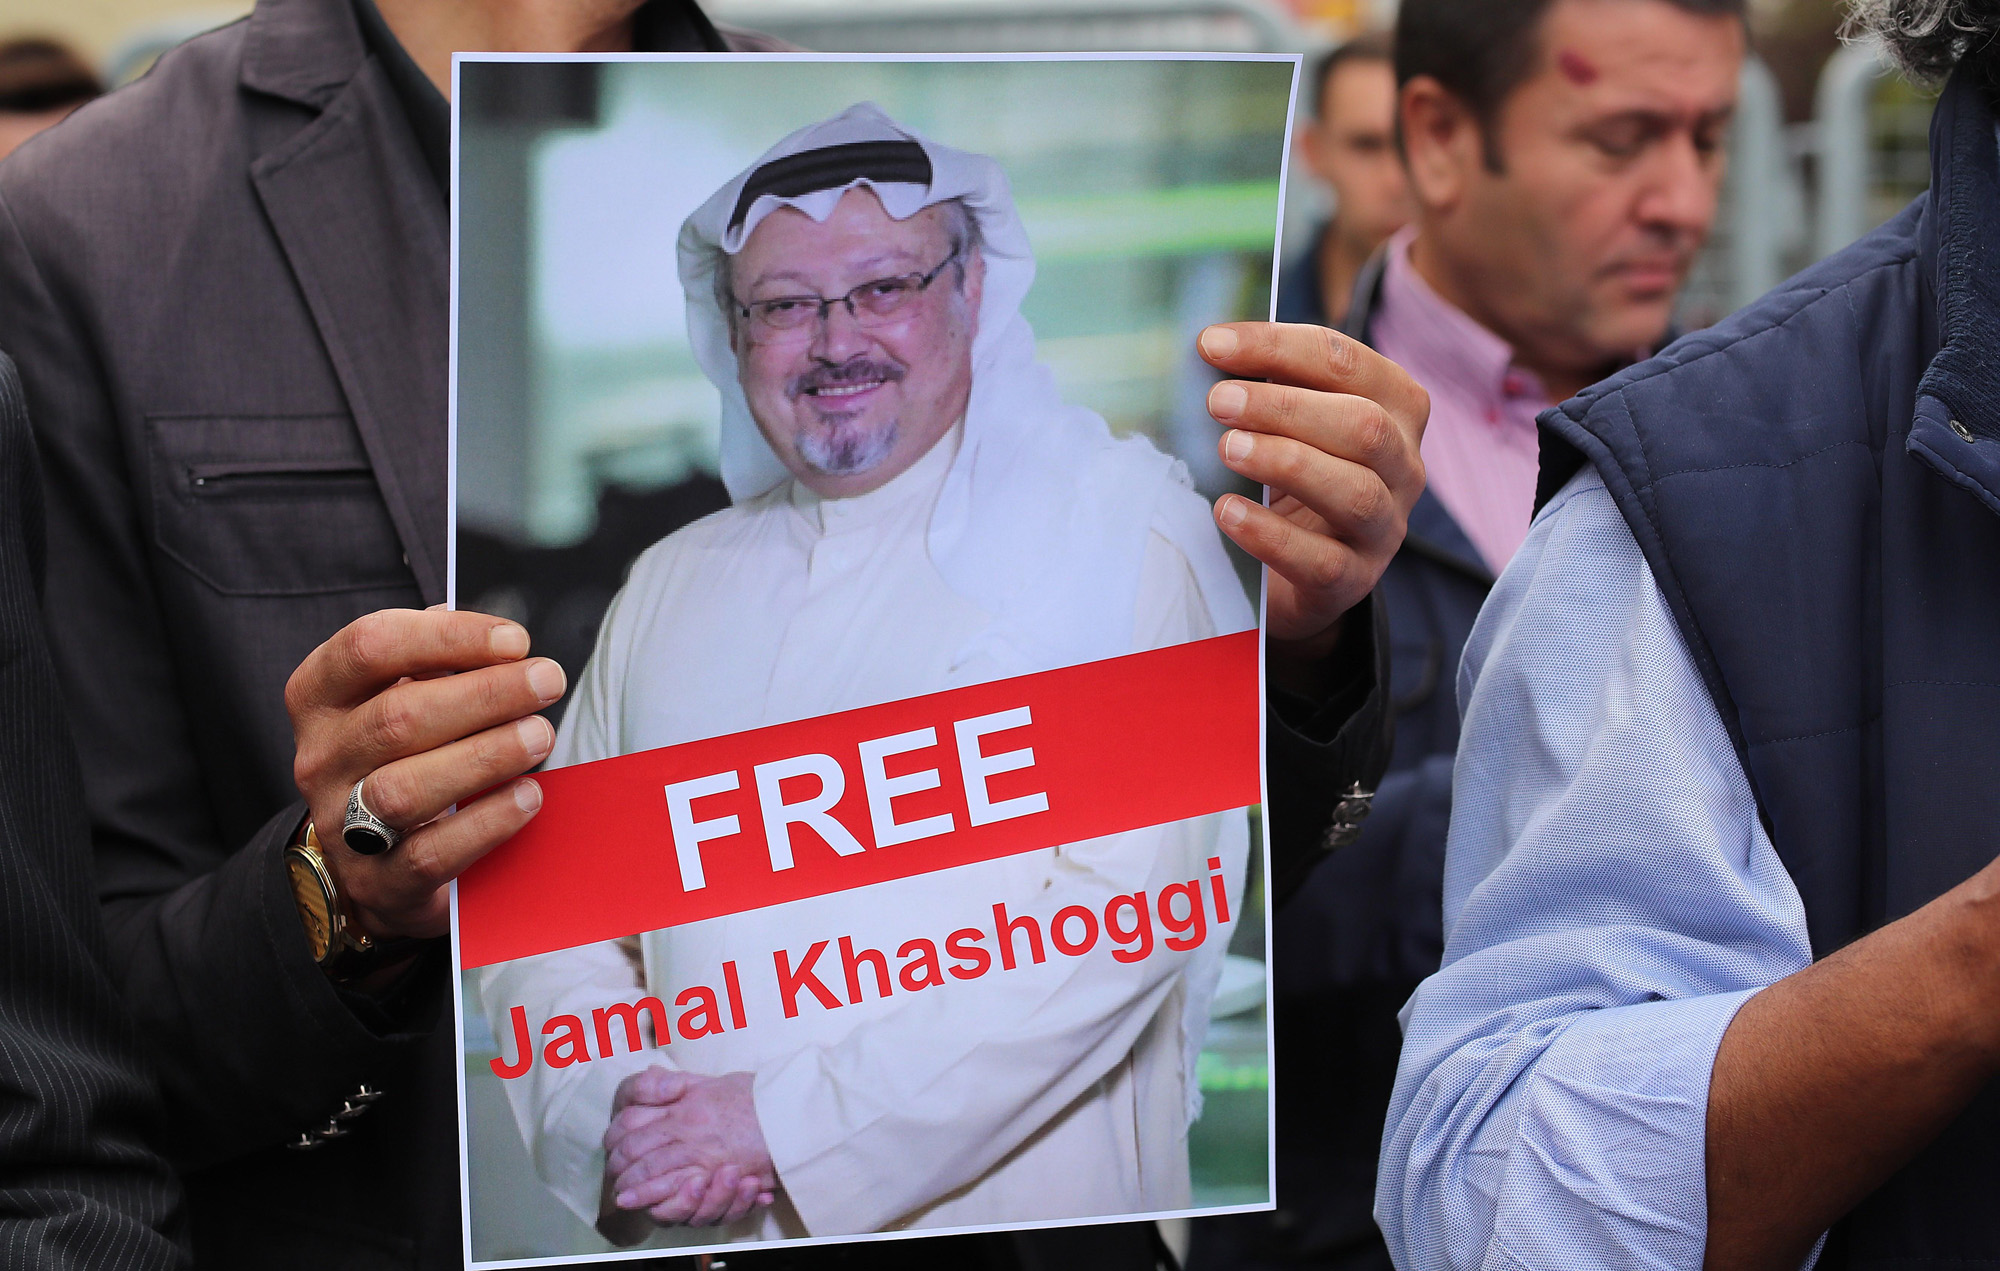 Arabia Saudí amenaza a los países que impongan sanciones por muerte de periodista